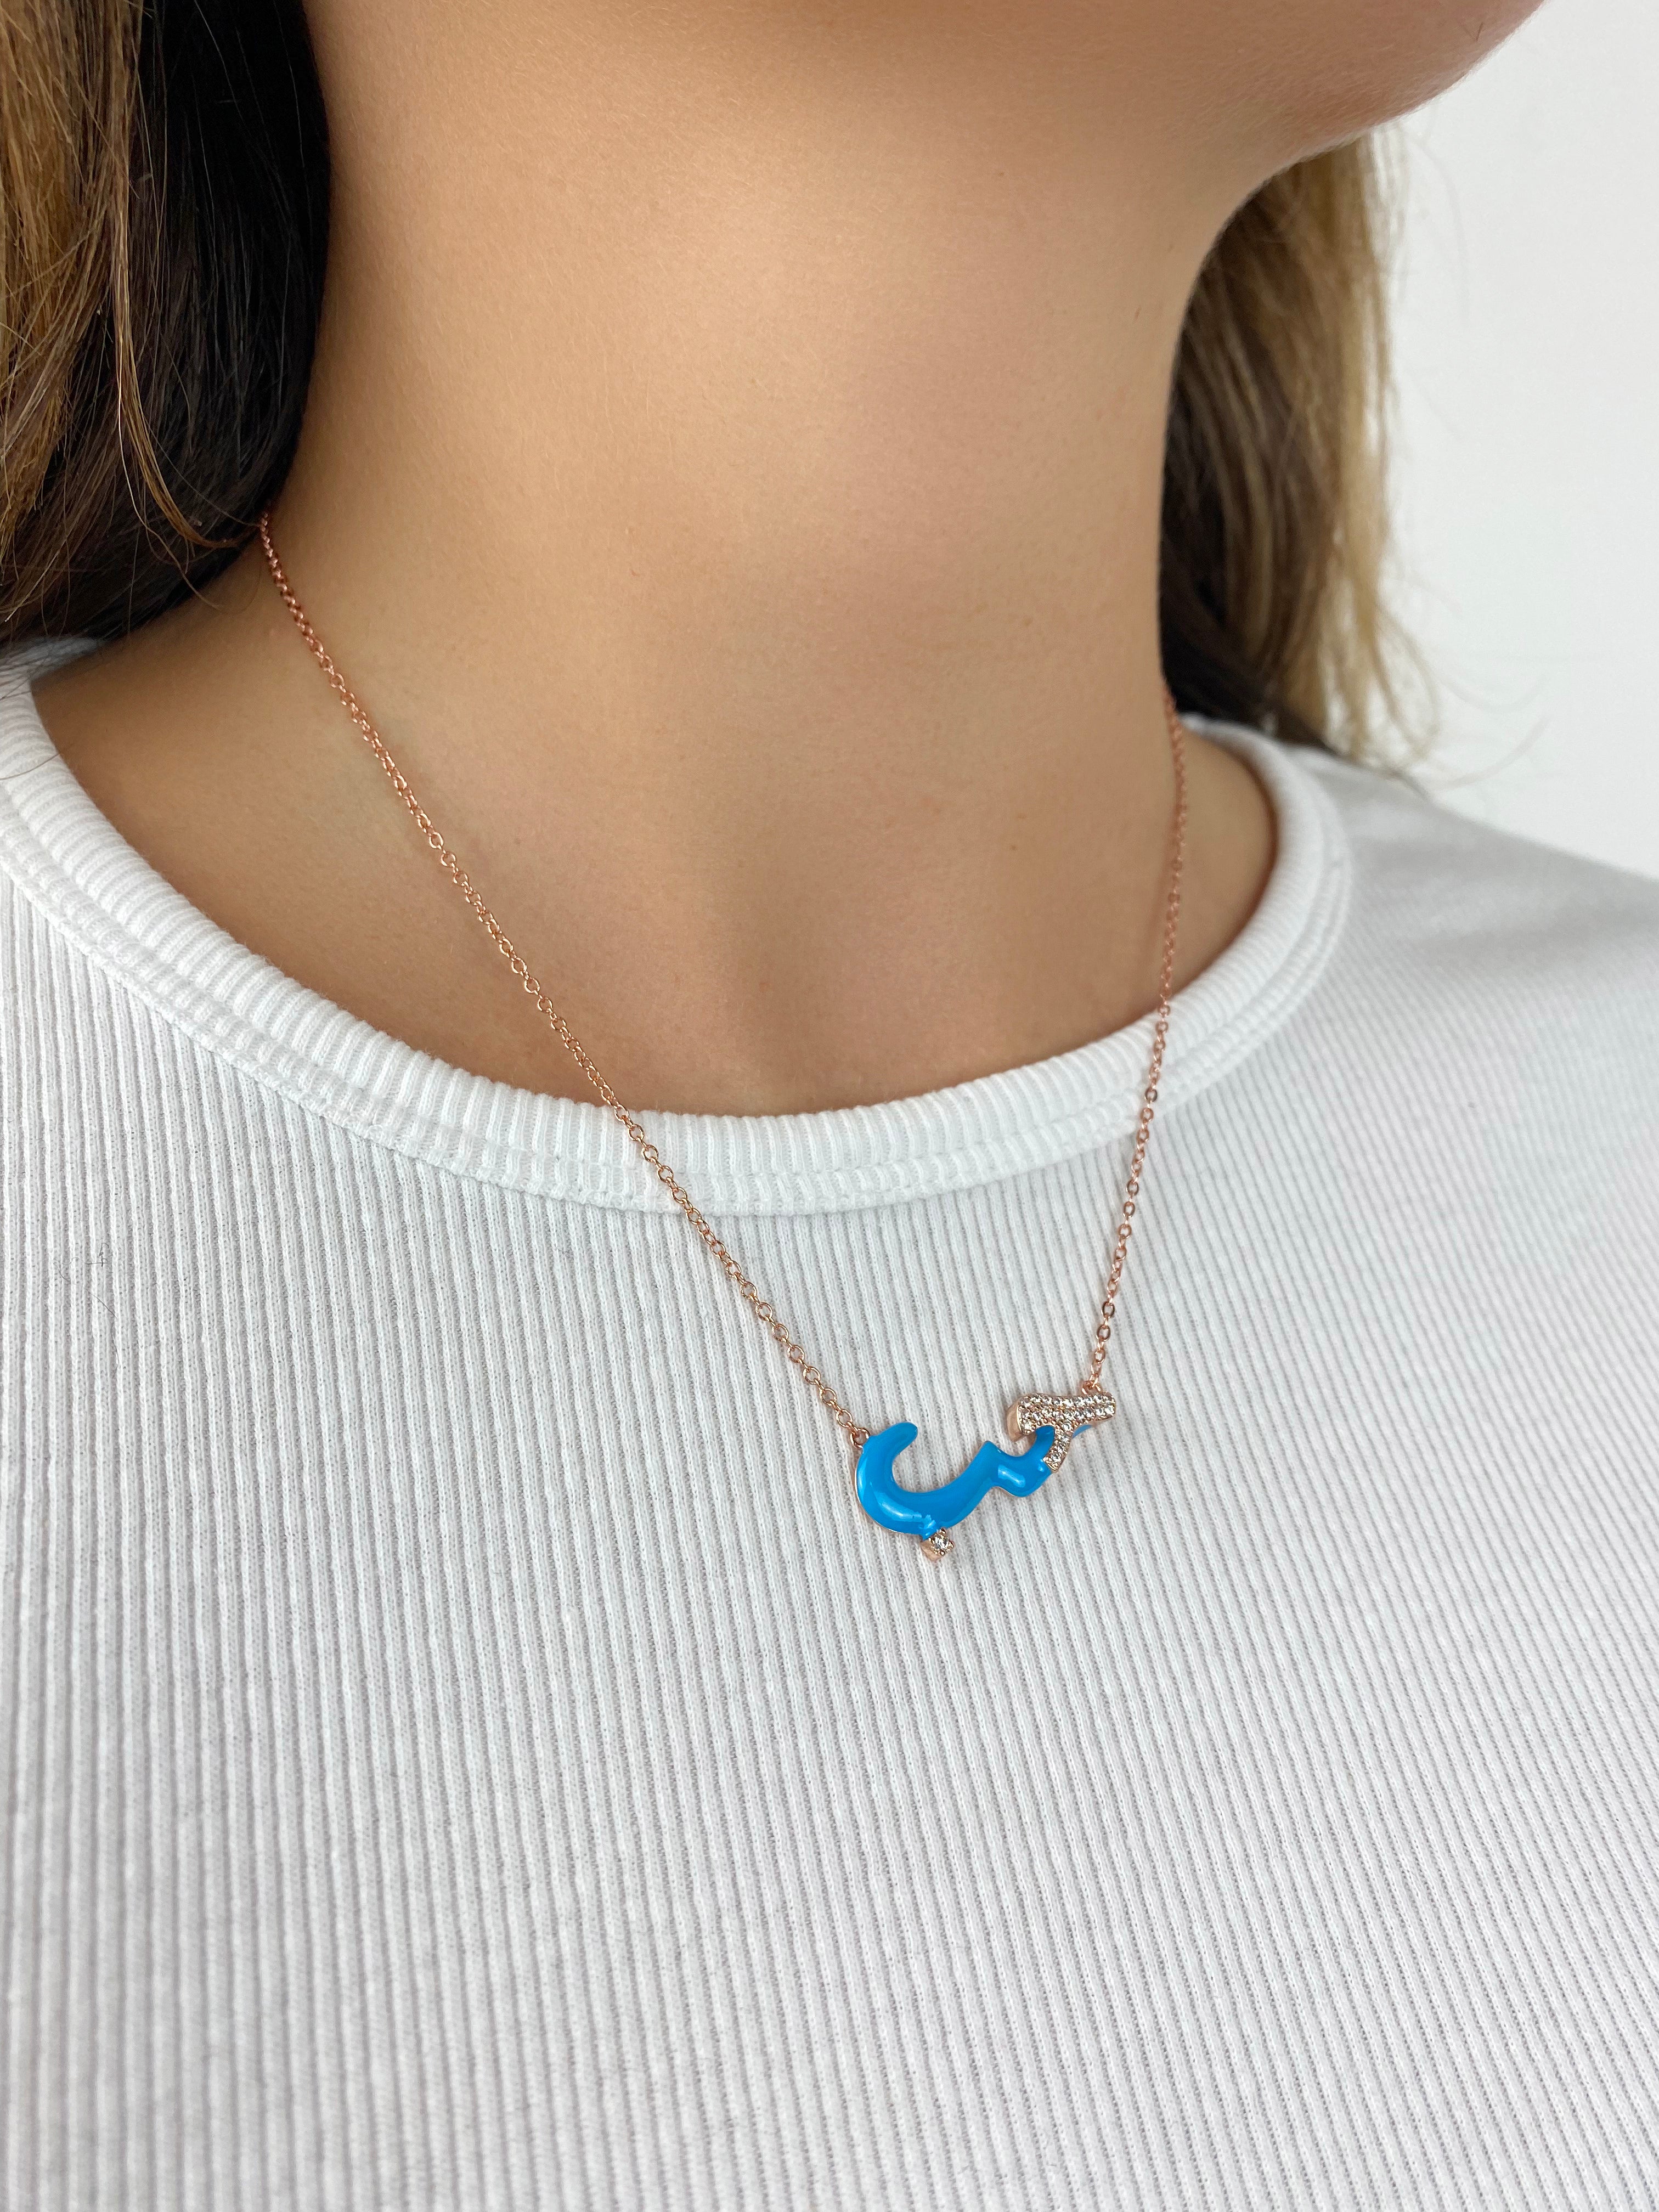 Enamel Love Necklace in Blue